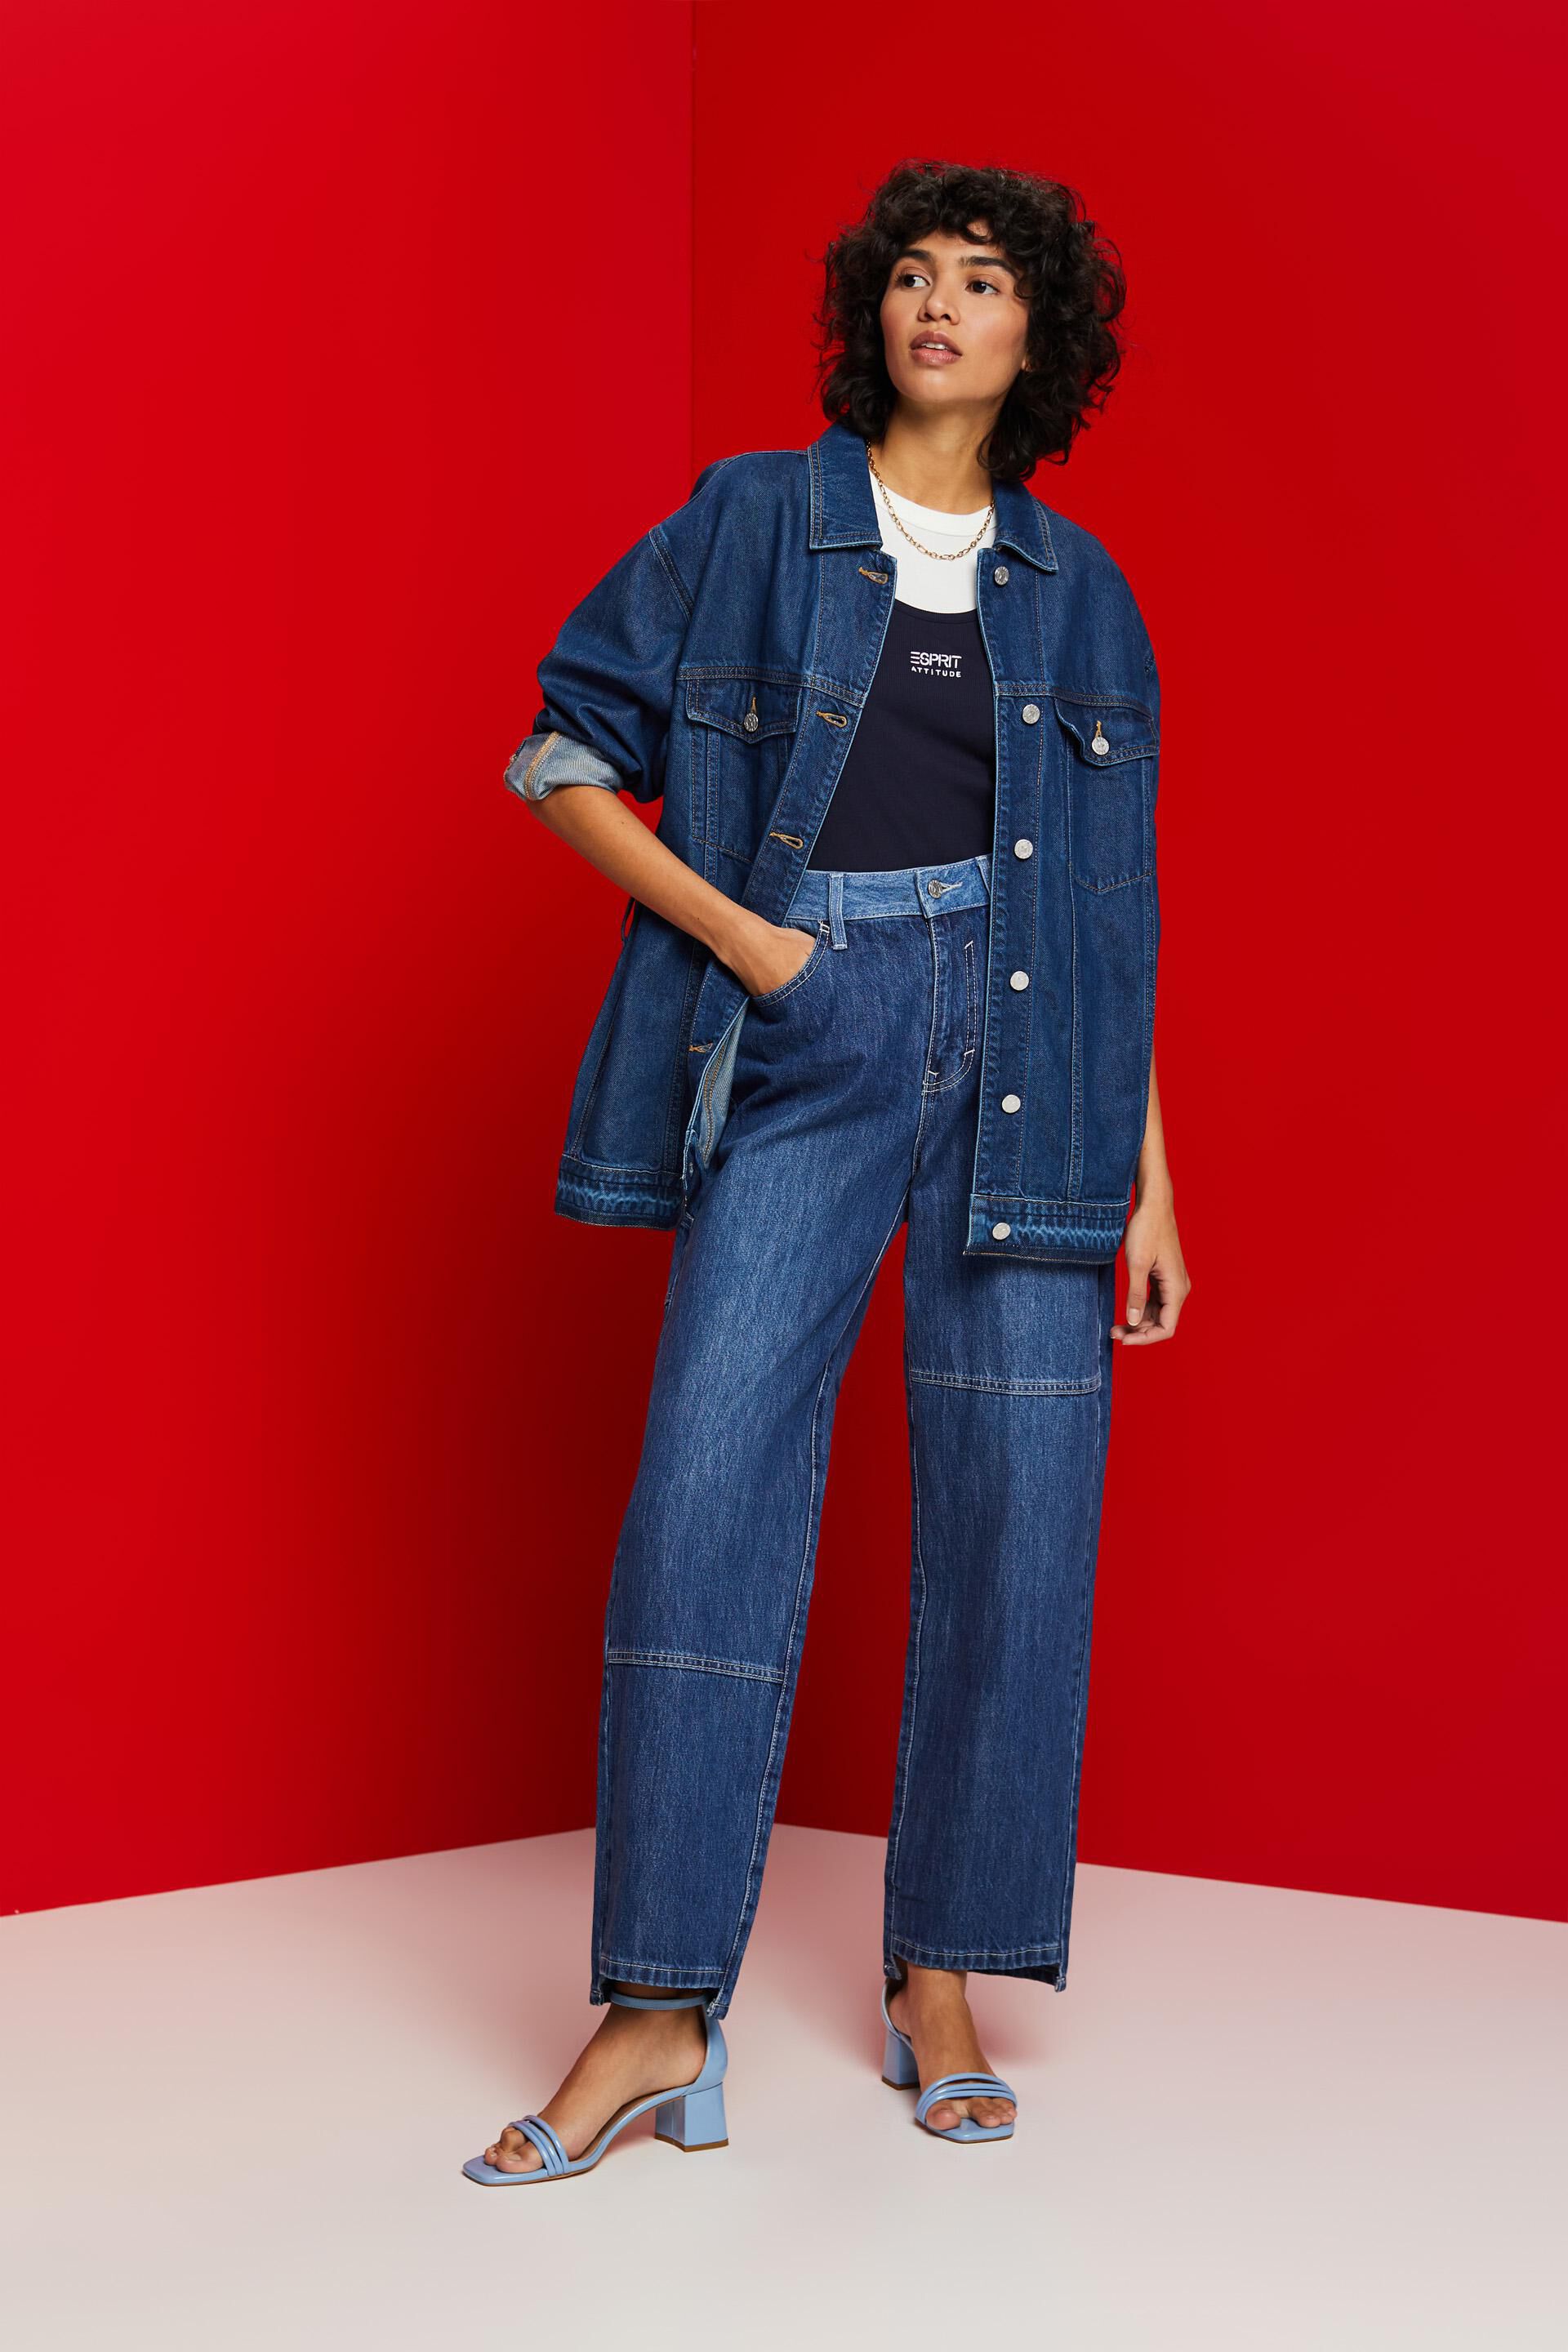 Esprit Damen Asymmetrische Jeans Stil weitem 90er der Bein im mit